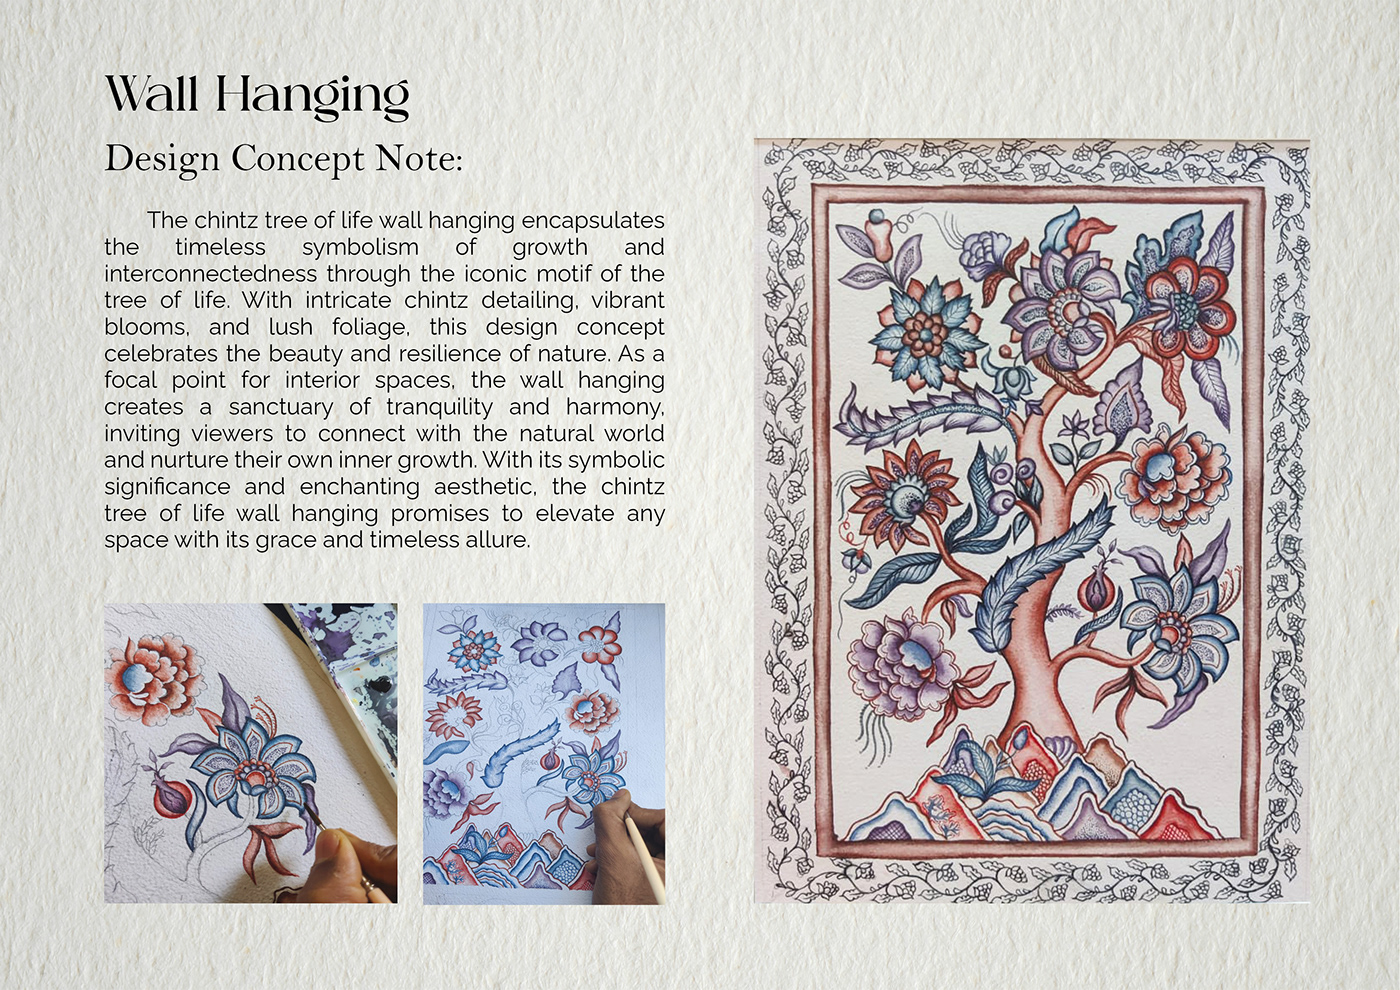 pattern design  textile design  textile chintz floral screenprint Textiles fabric design Surface Pattern apperal